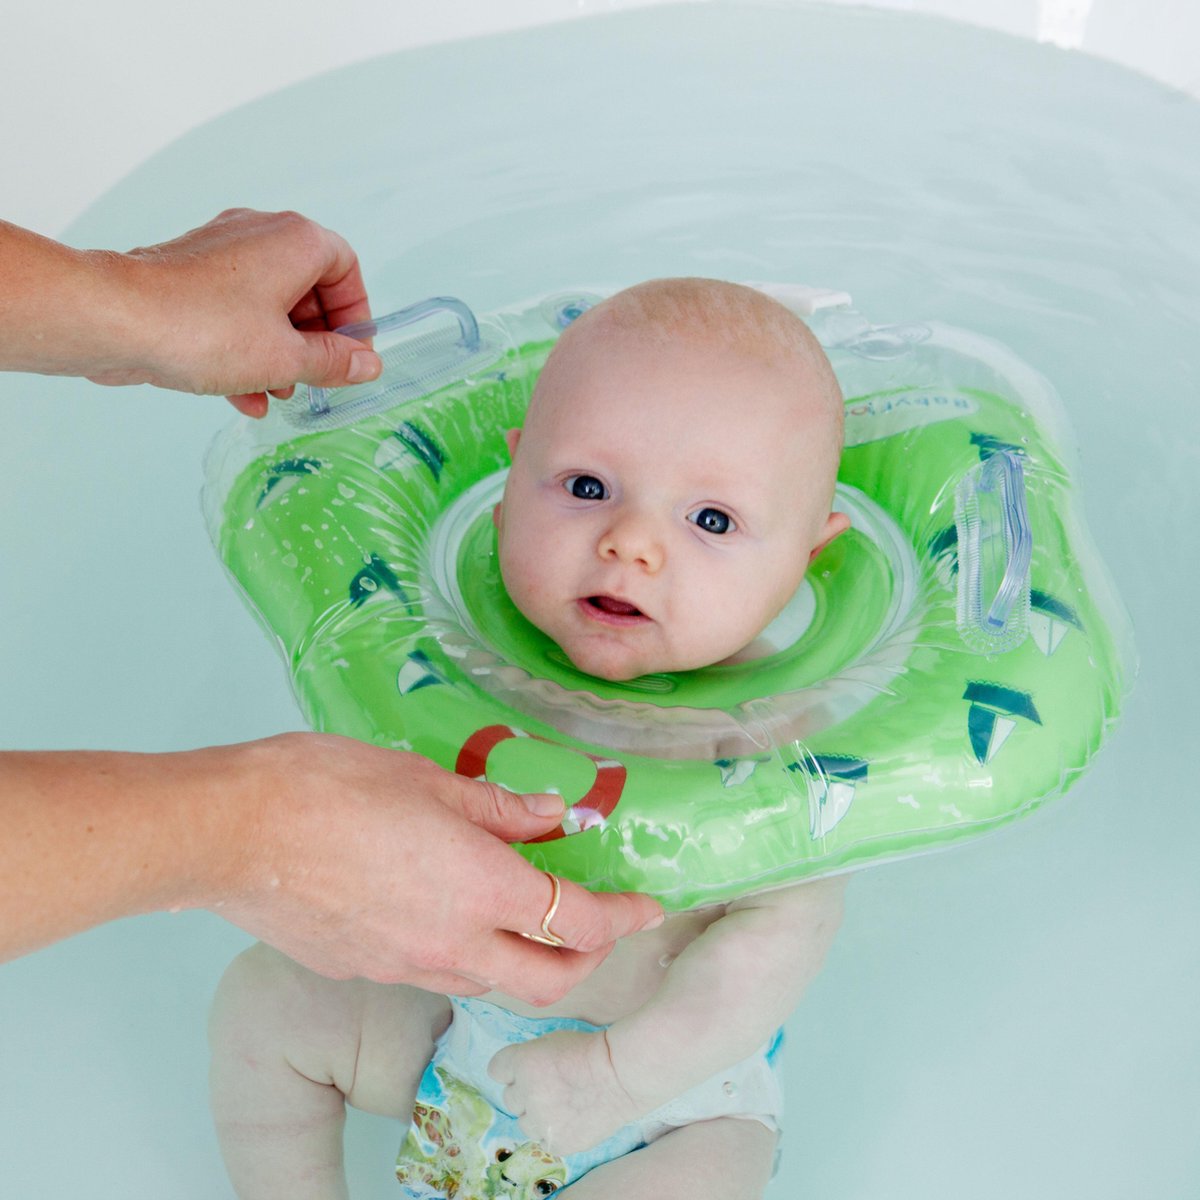 veelbelovend Voorbeeld optie BabyFloat ® - CE Goedgekeurde Zwemband Baby Nek - Baby Swimmer - Groen |  bol.com